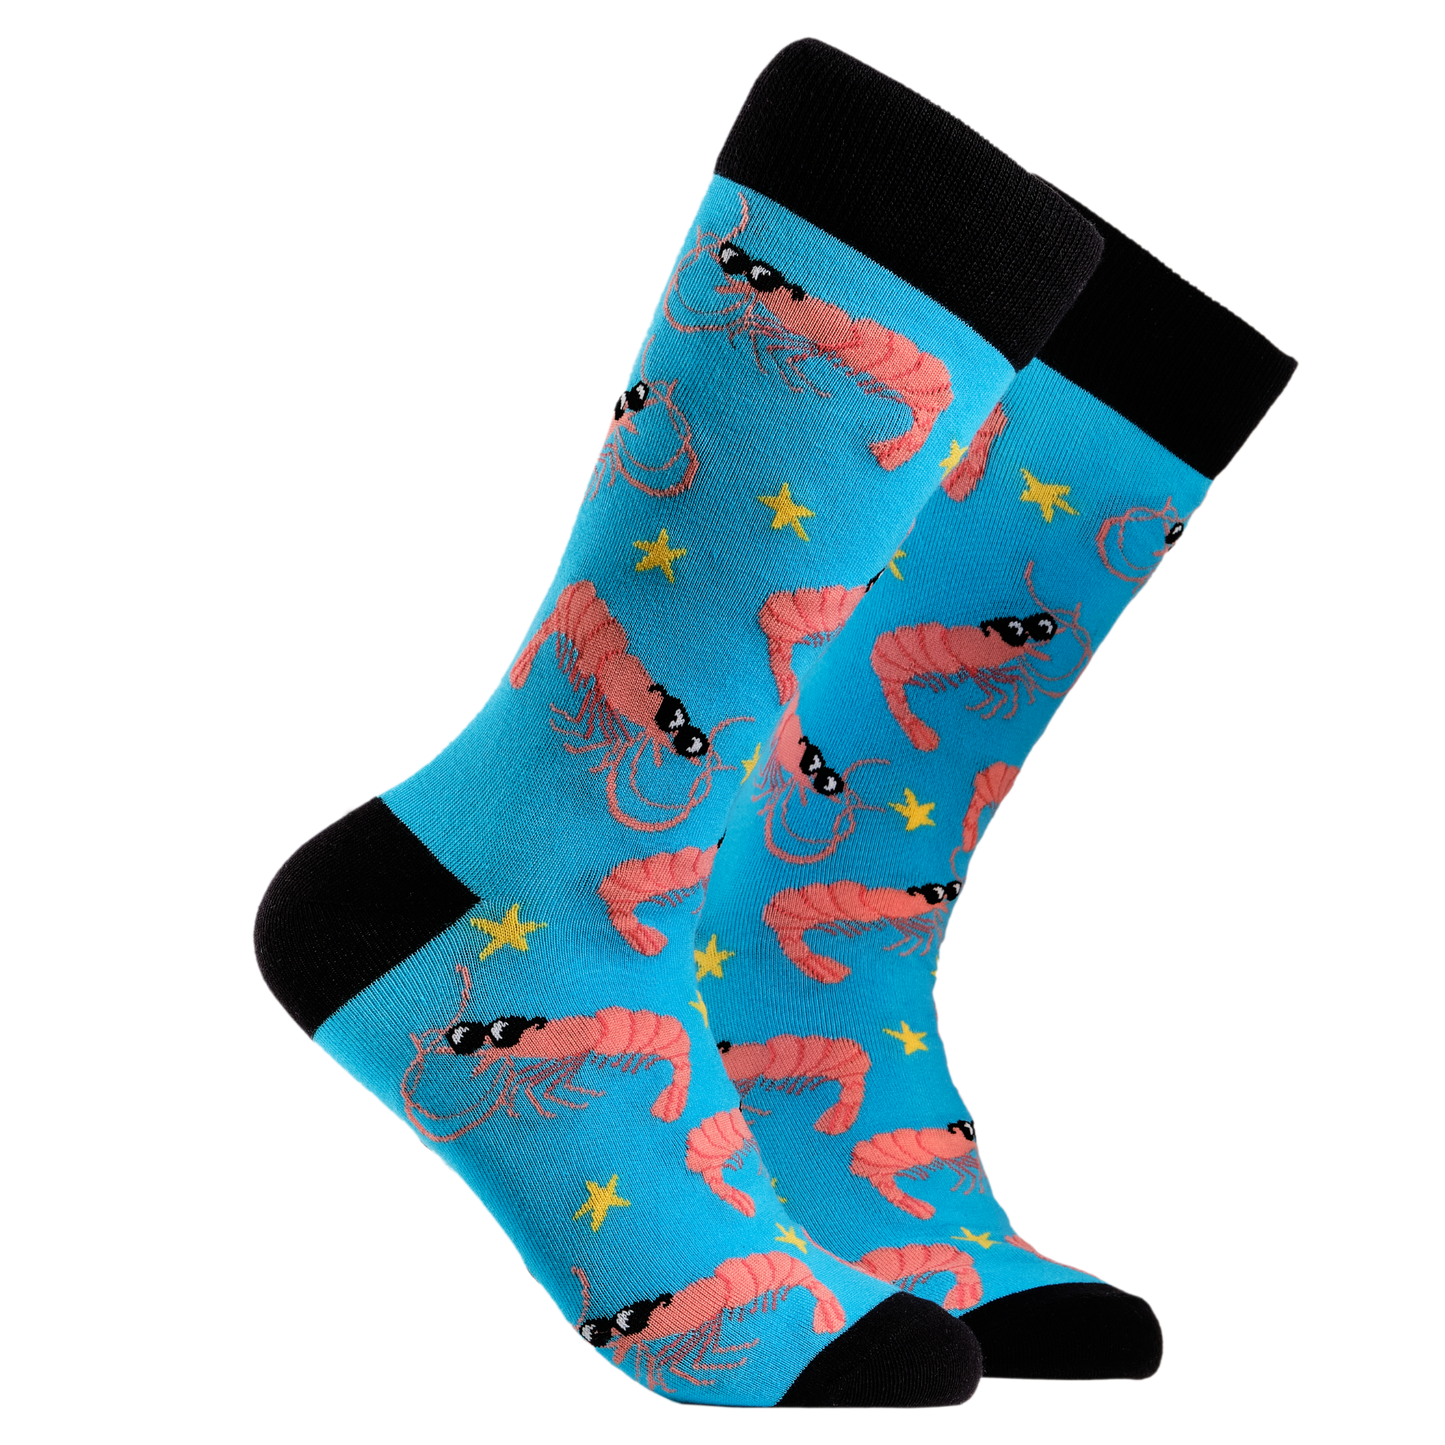 Prawn Socks - Prawnstar. A pair of socks depicting cool prawns in sunglasses. Bright blue legs, black cuff, heel and toe.